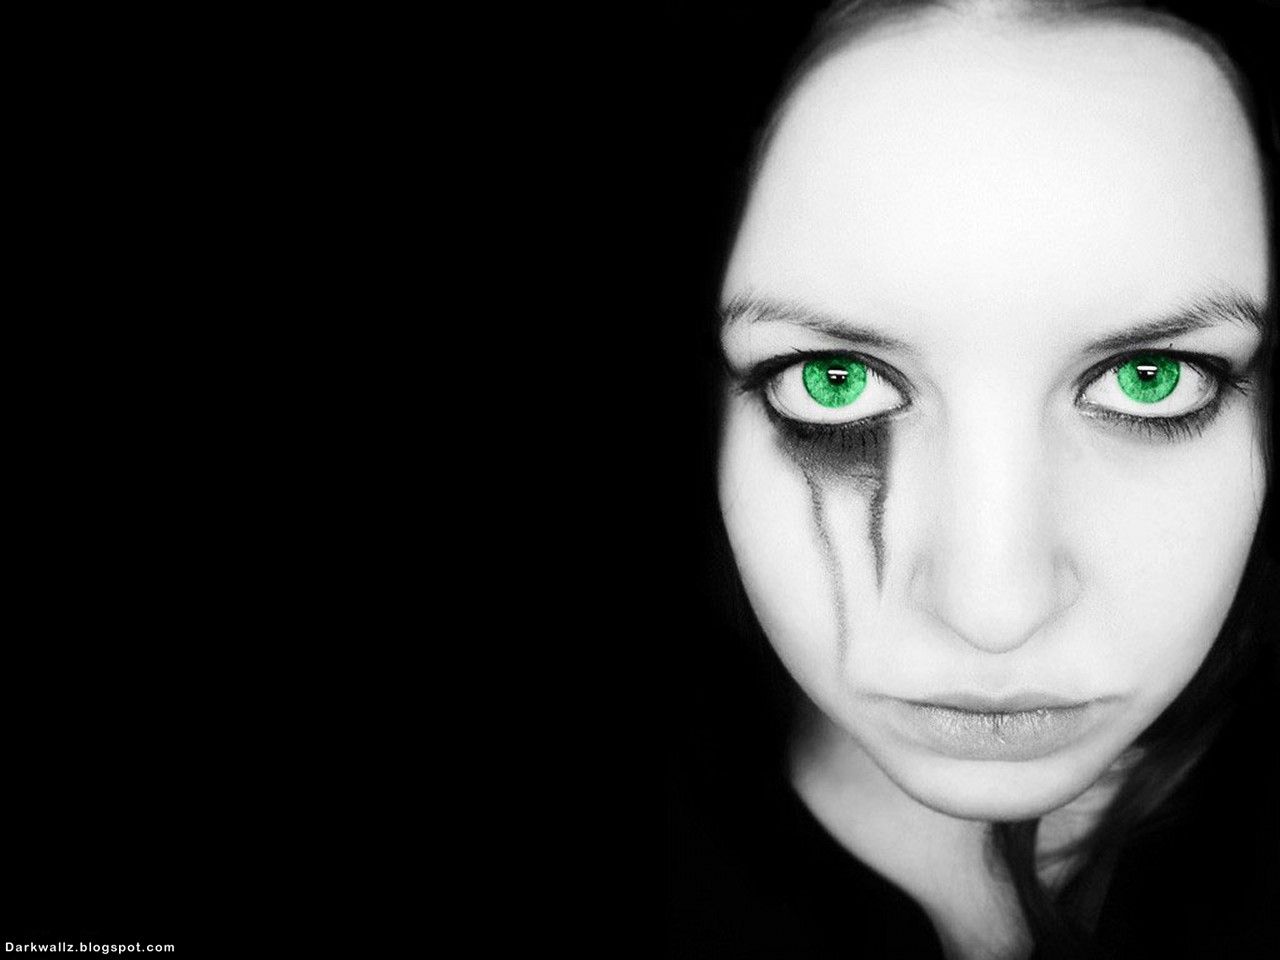 Gothic Girl With Green Eyes dark gothic wallpaper | Dark ...